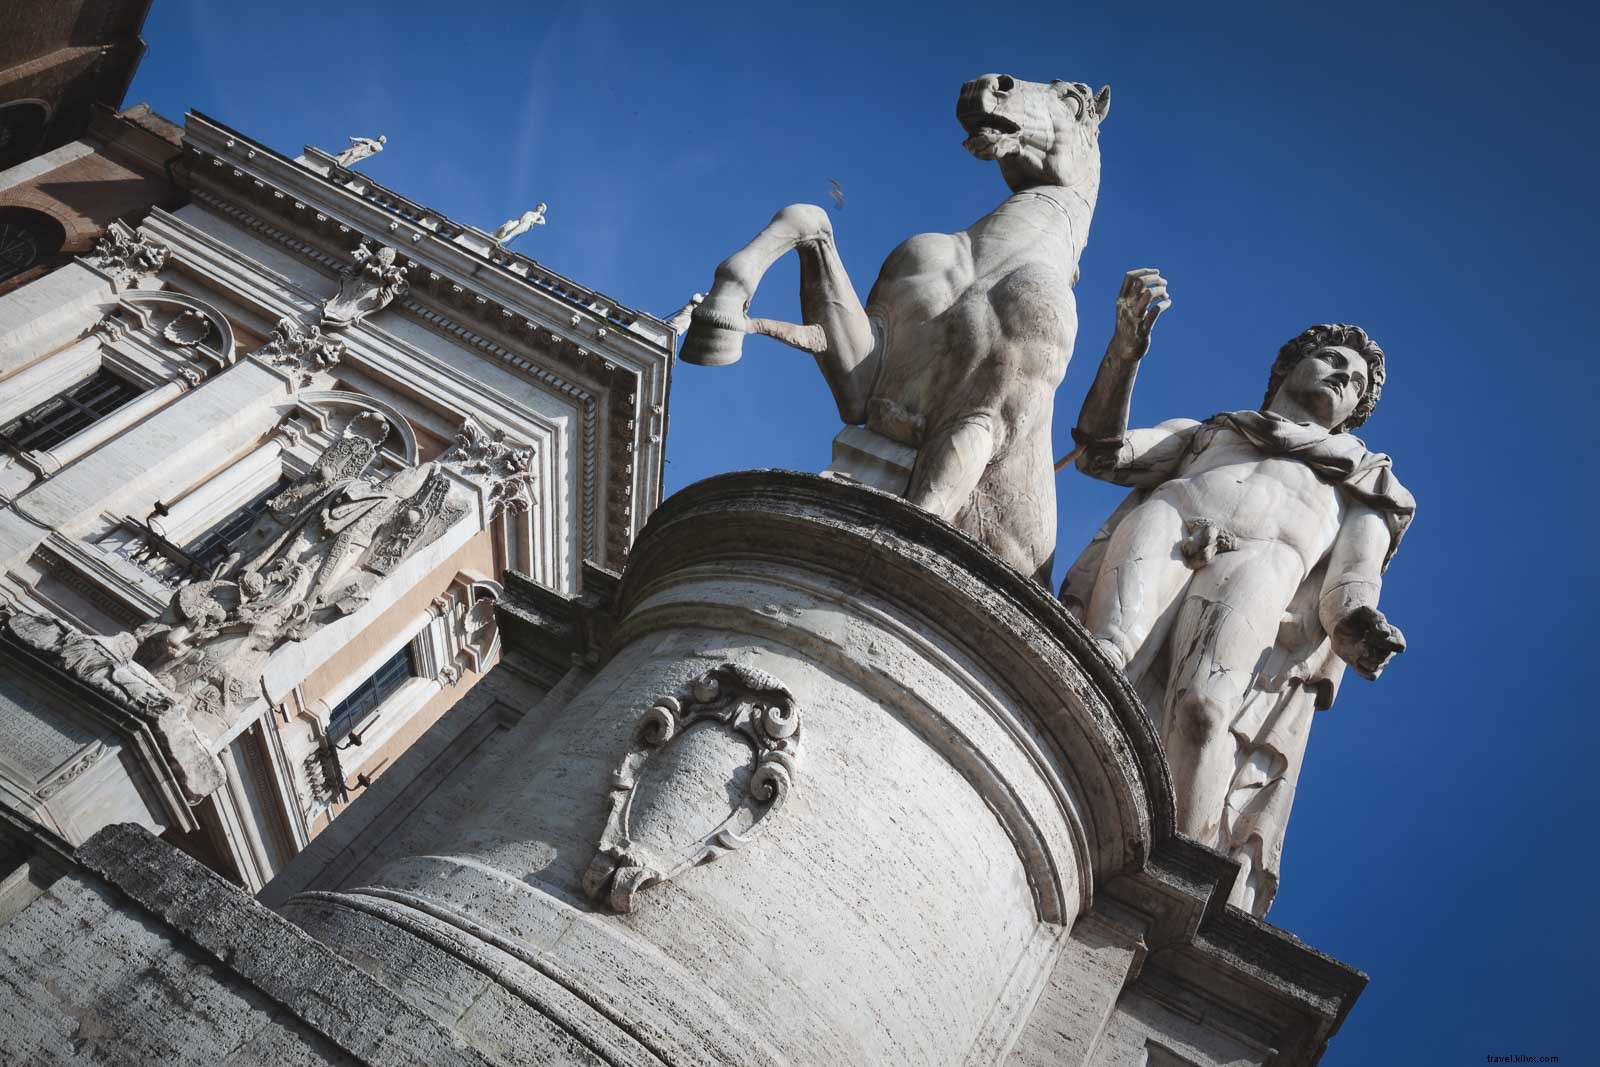 9 datos interesantes sobre Roma, Italia que quizás no conozcas